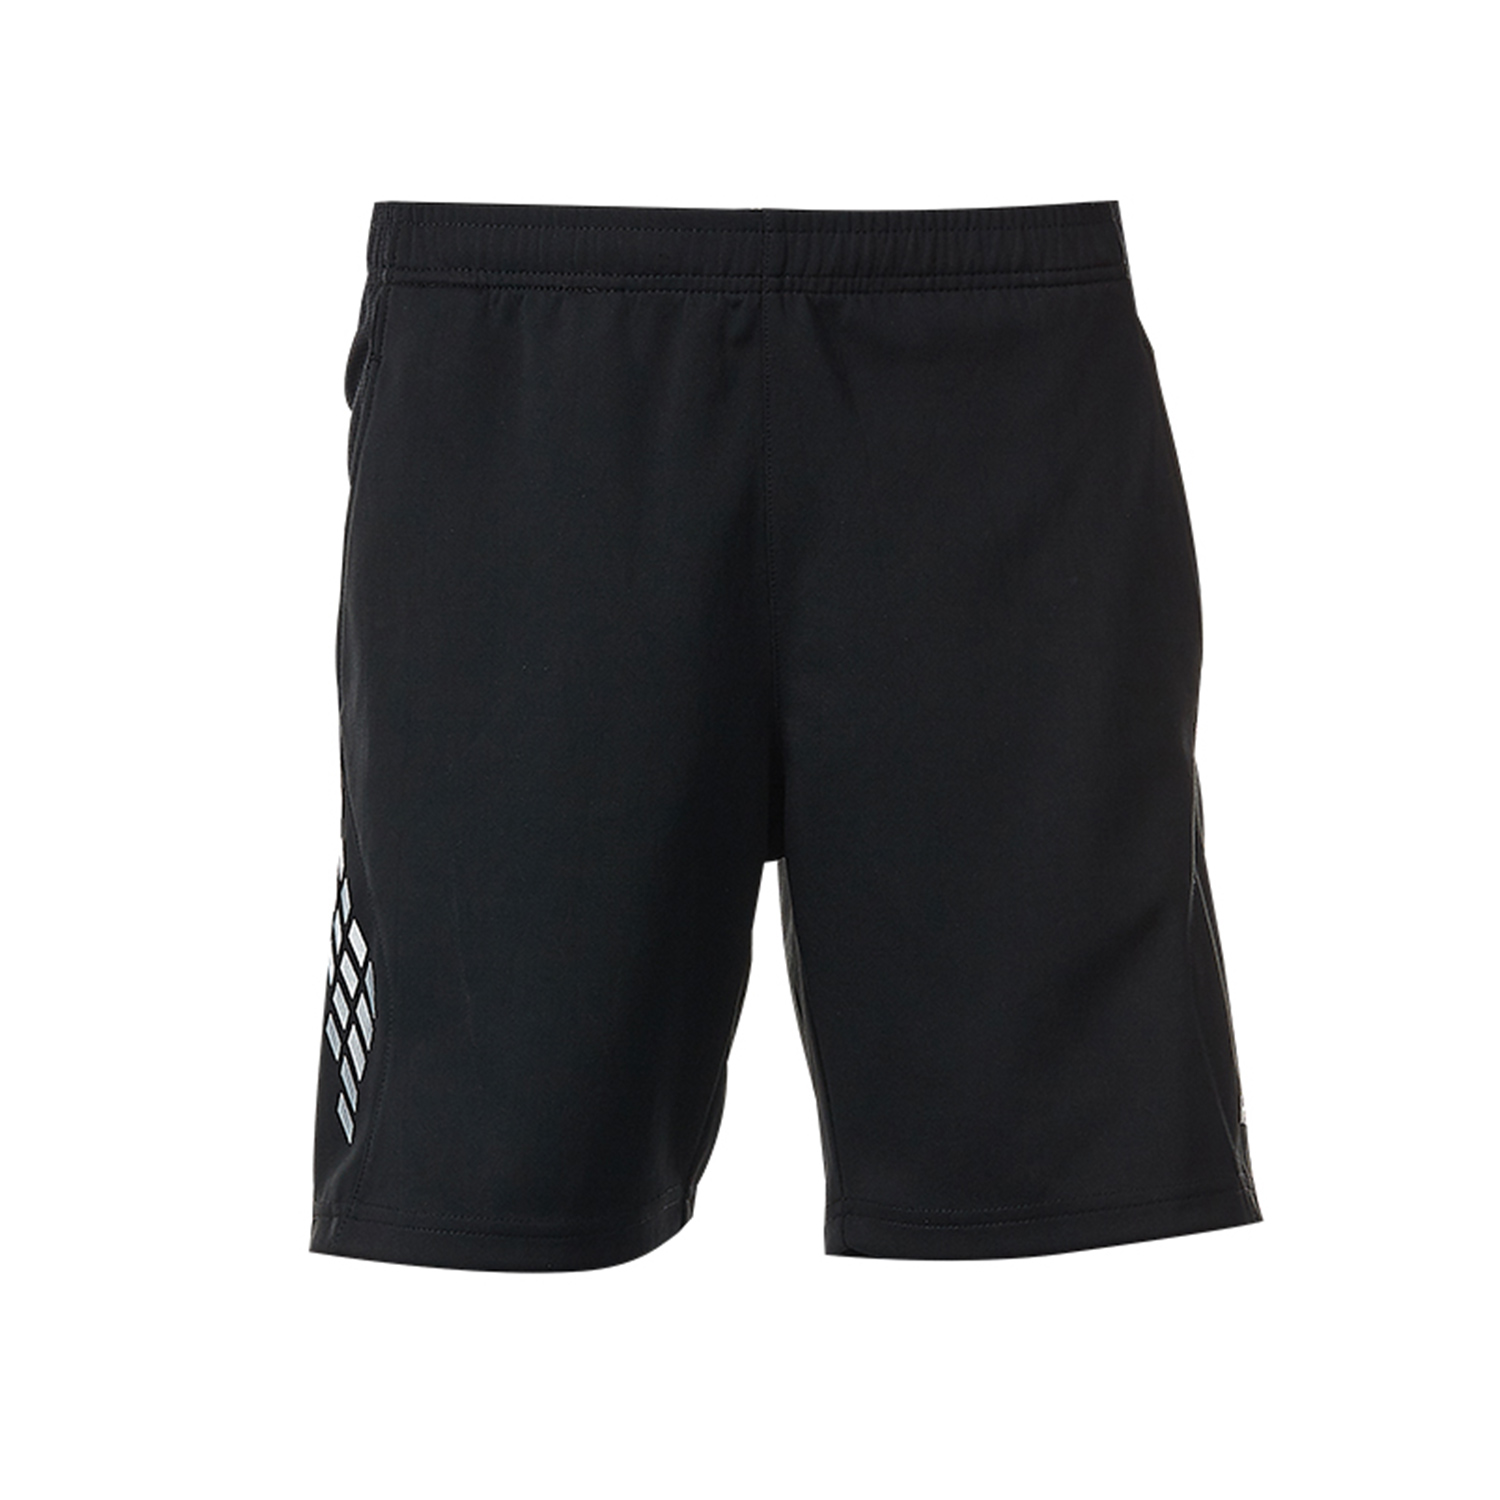 中性款针织运动短裤 SP-T3601 黑色